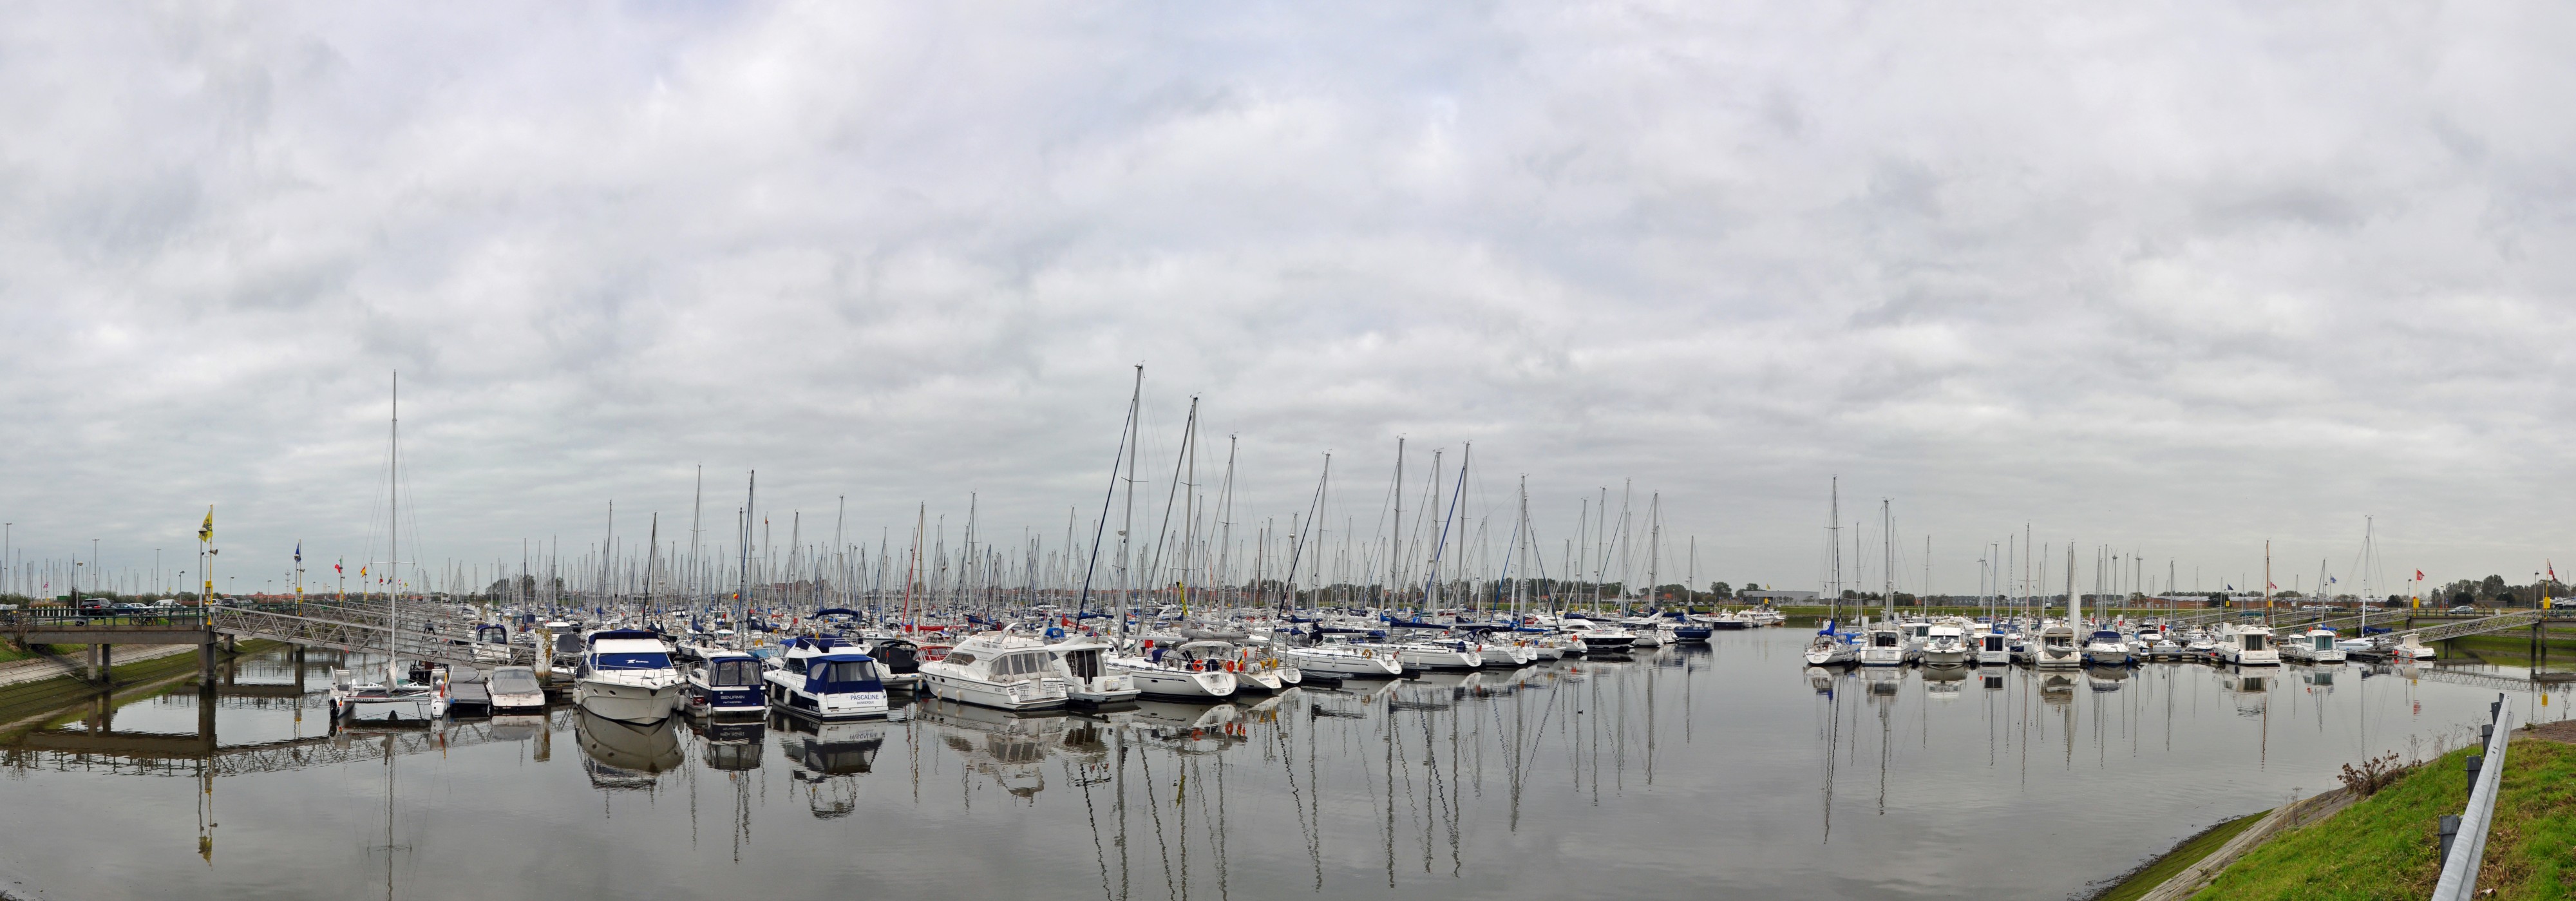 Nieuwpoort Jachthaven Panorama3